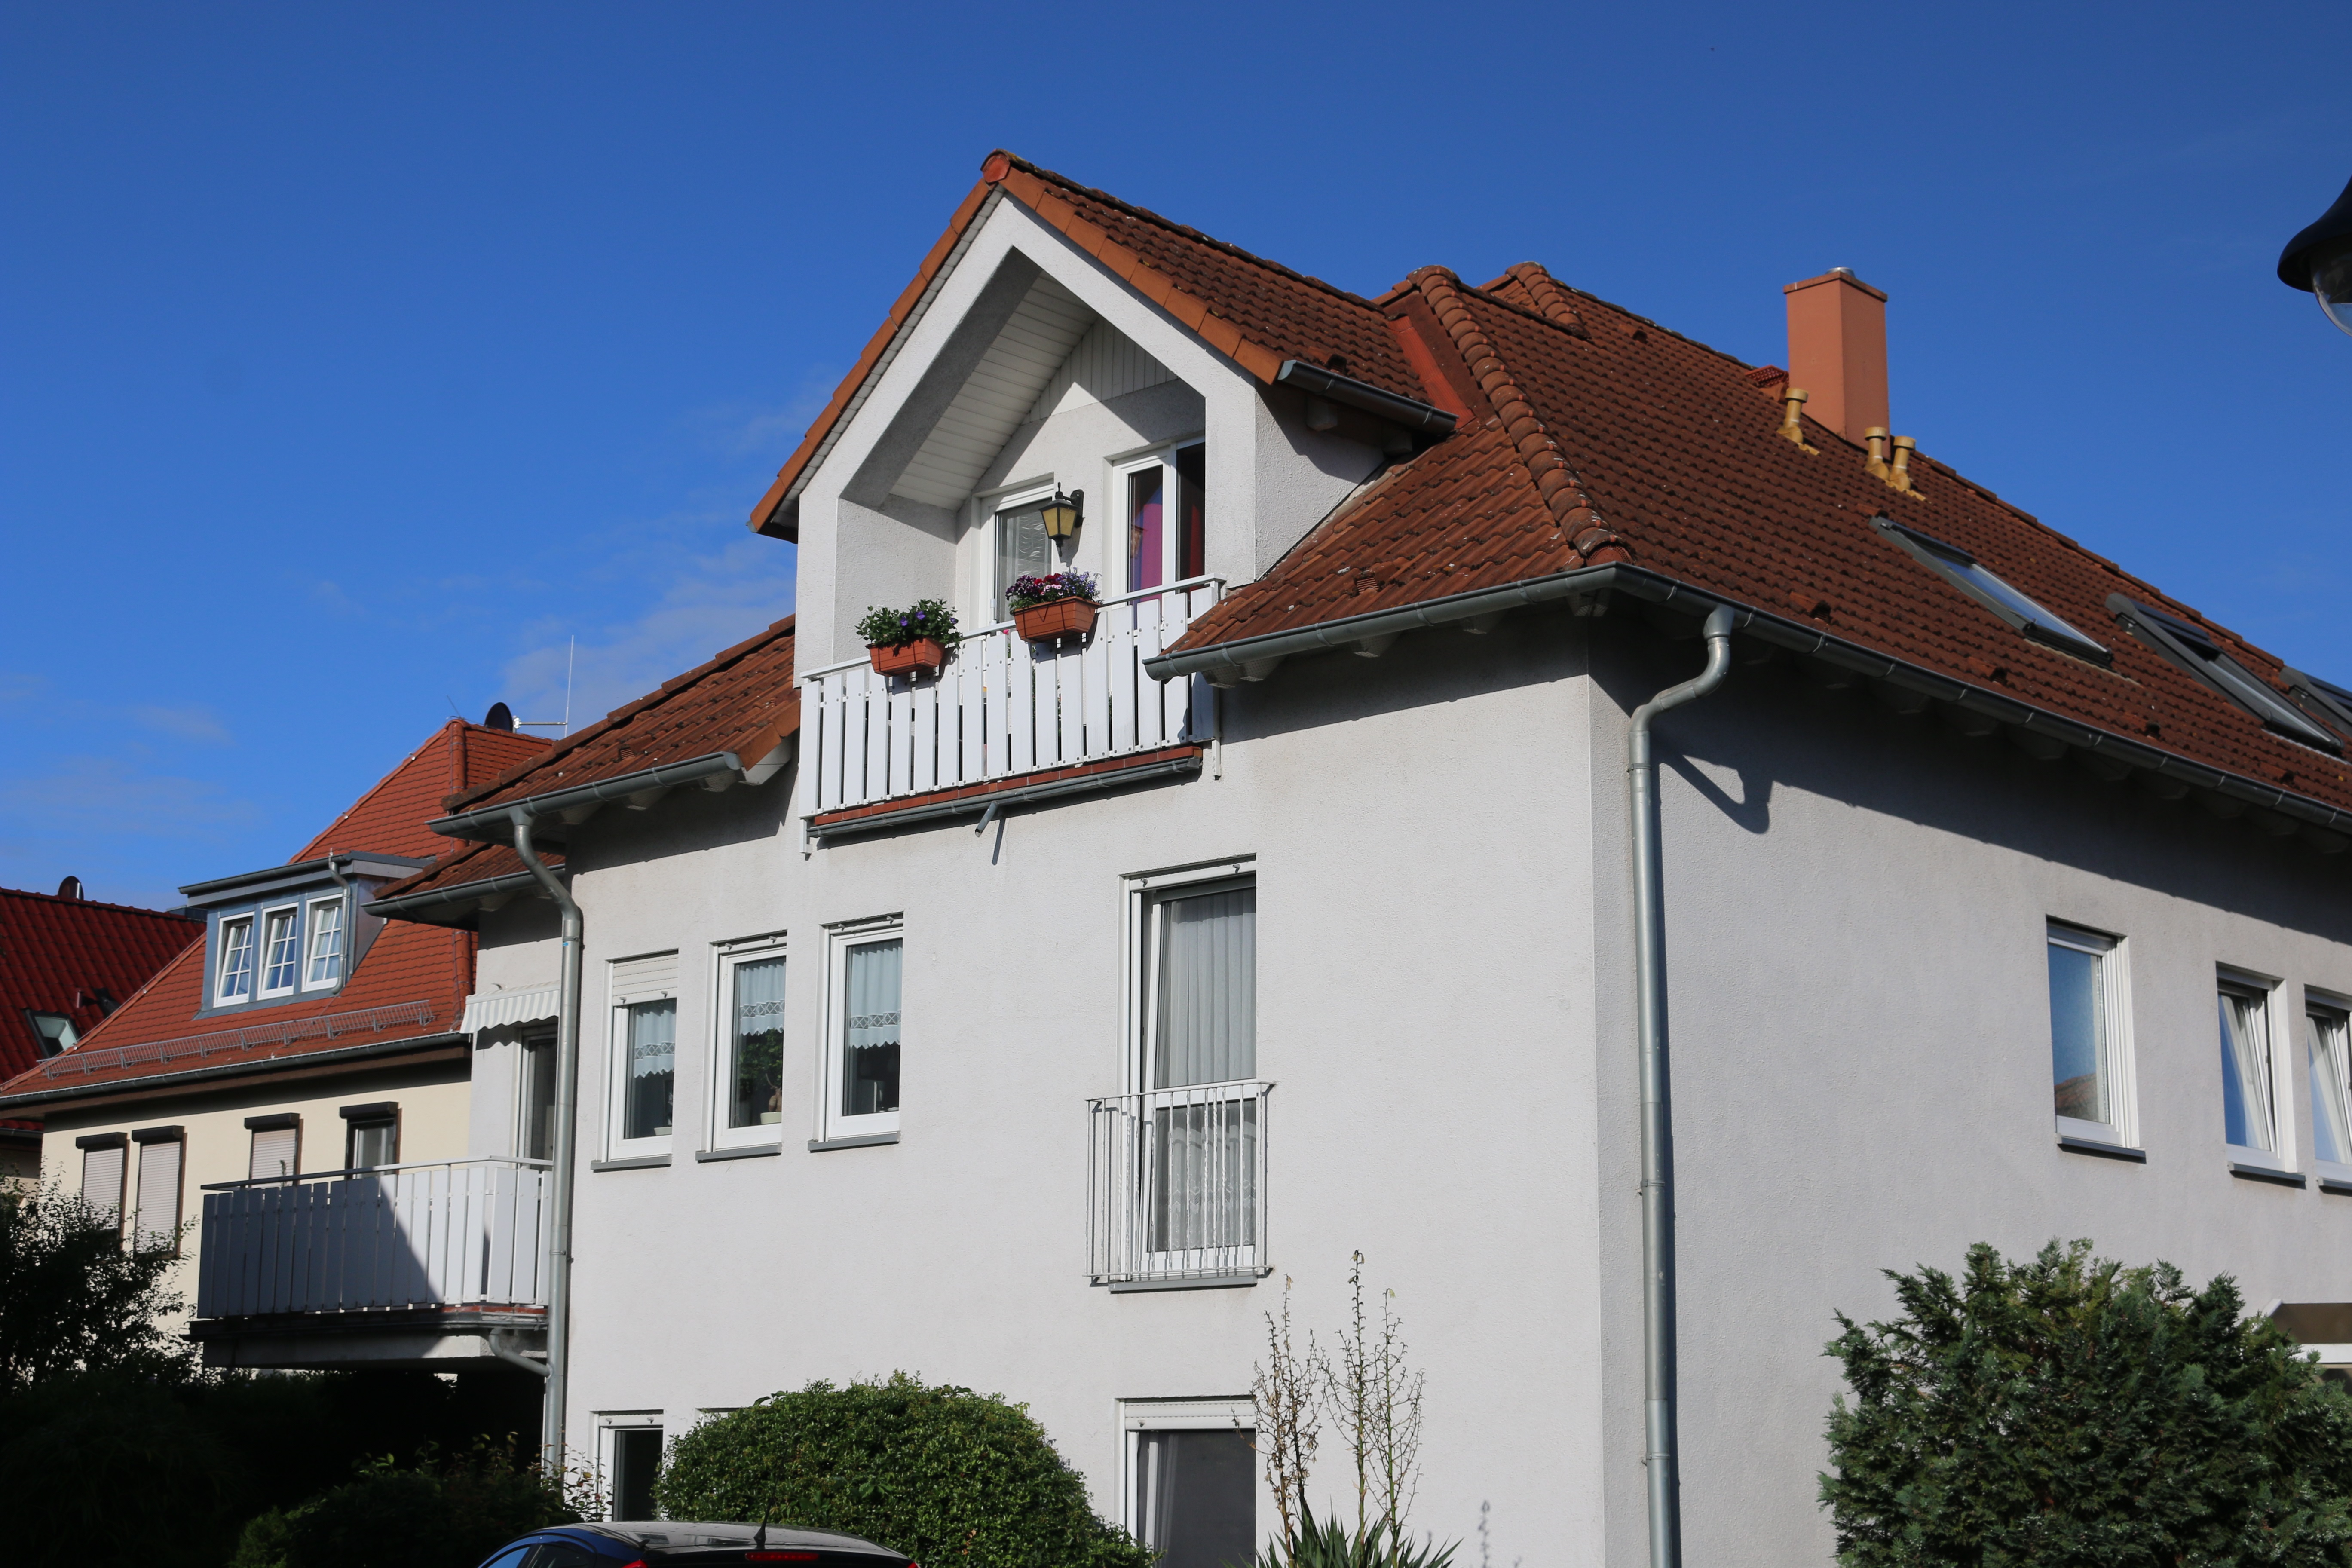 Immobilienvermarktung und Verwaltung Sylvia Lampe, Brandtstraße 18a in Magdeburg